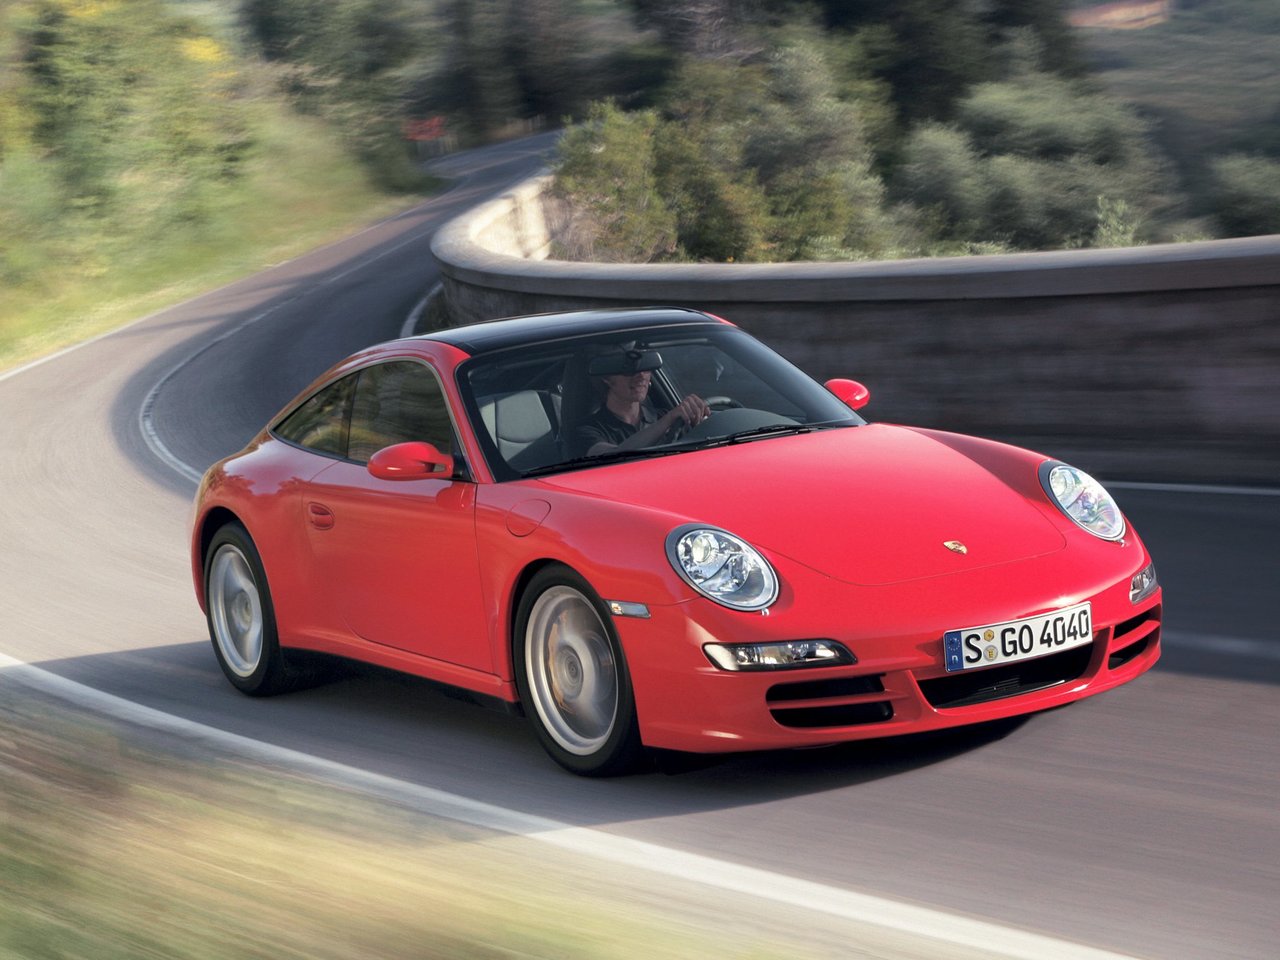 Расход газа одной комплектации тарги Targa Porsche 911. Разница стоимости заправки газом и бензином. Автономный пробег до и после установки ГБО.